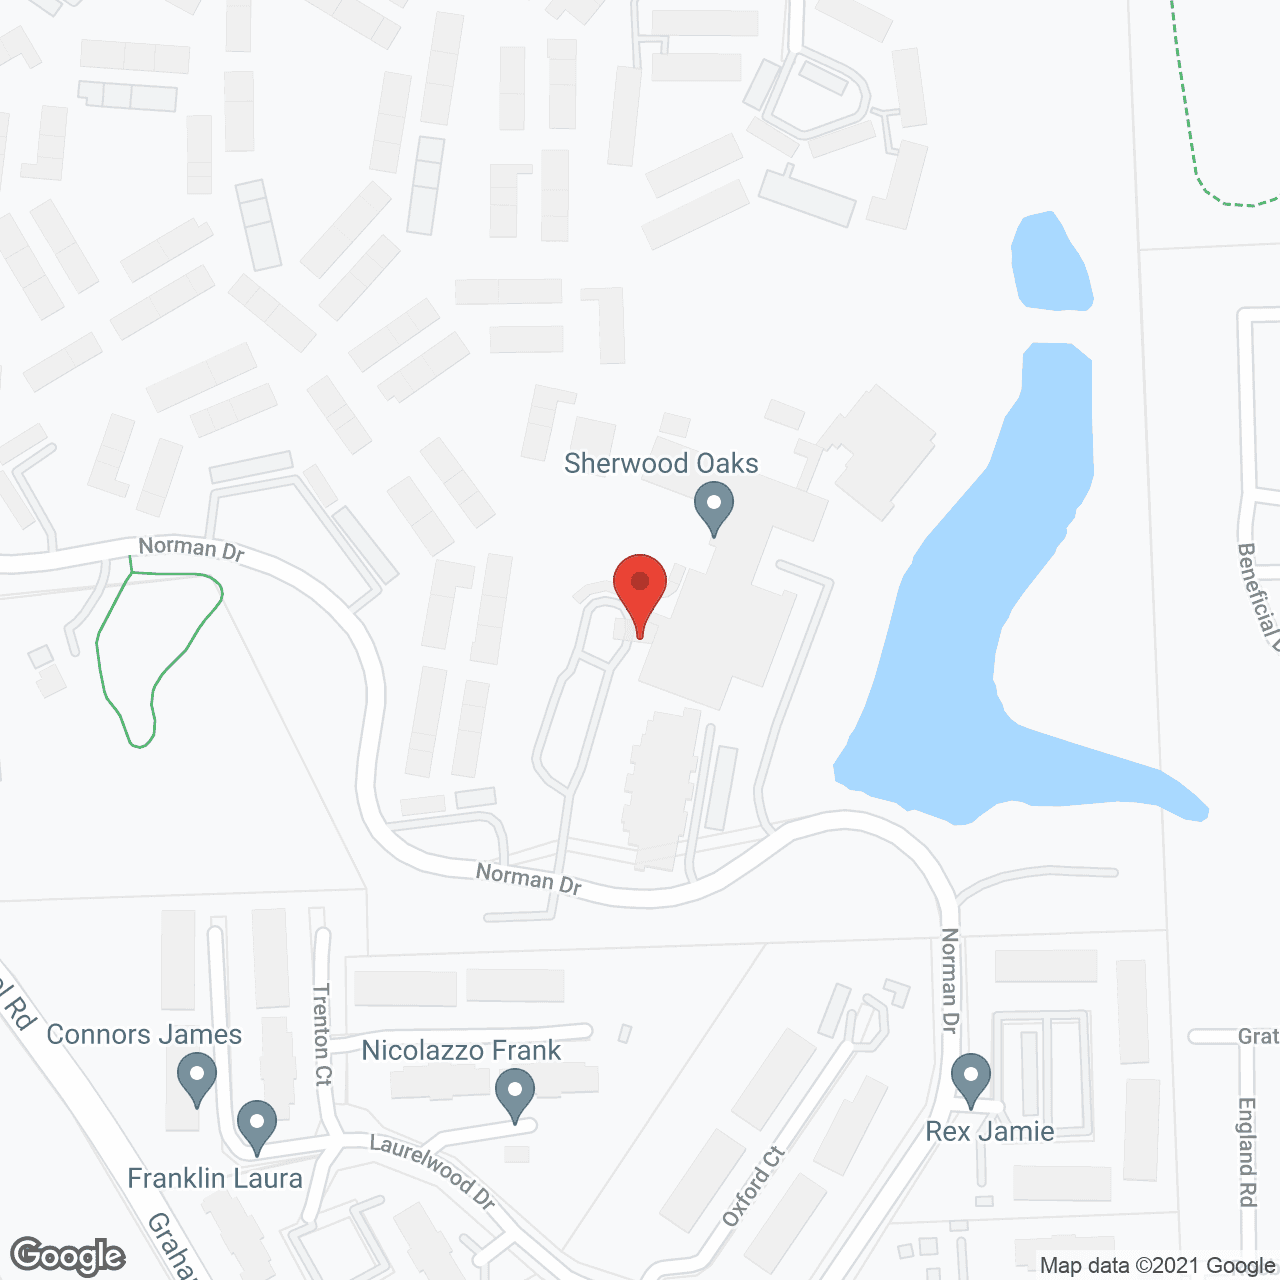 Sherwood Oaks Retirement Community in google map